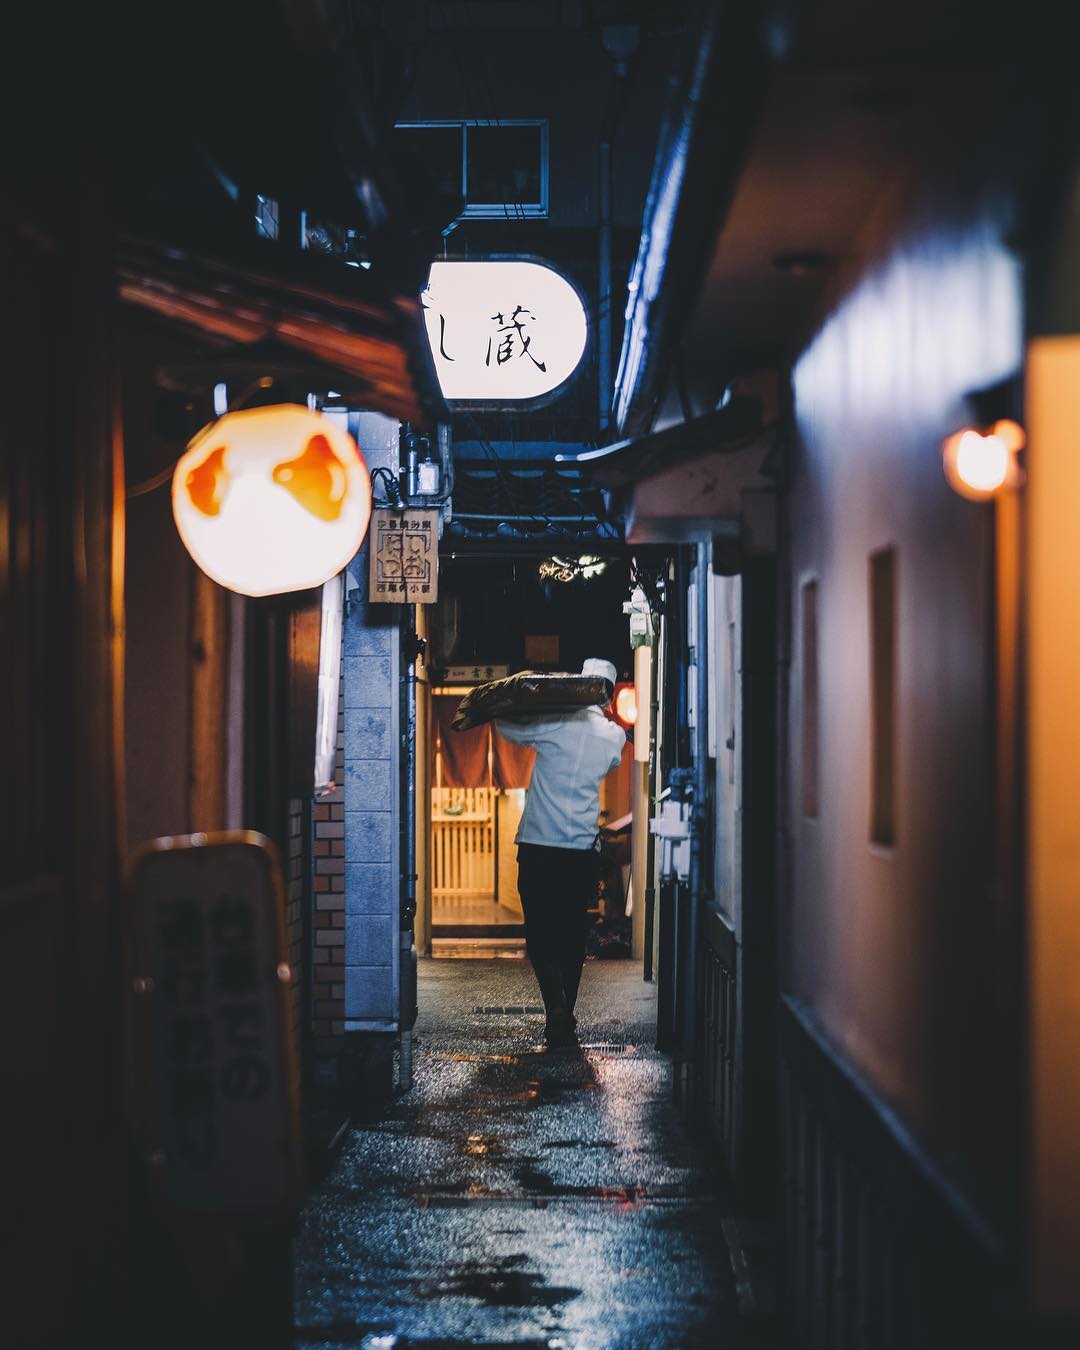 Городские и уличные снимки Японии от Хиро Шимады